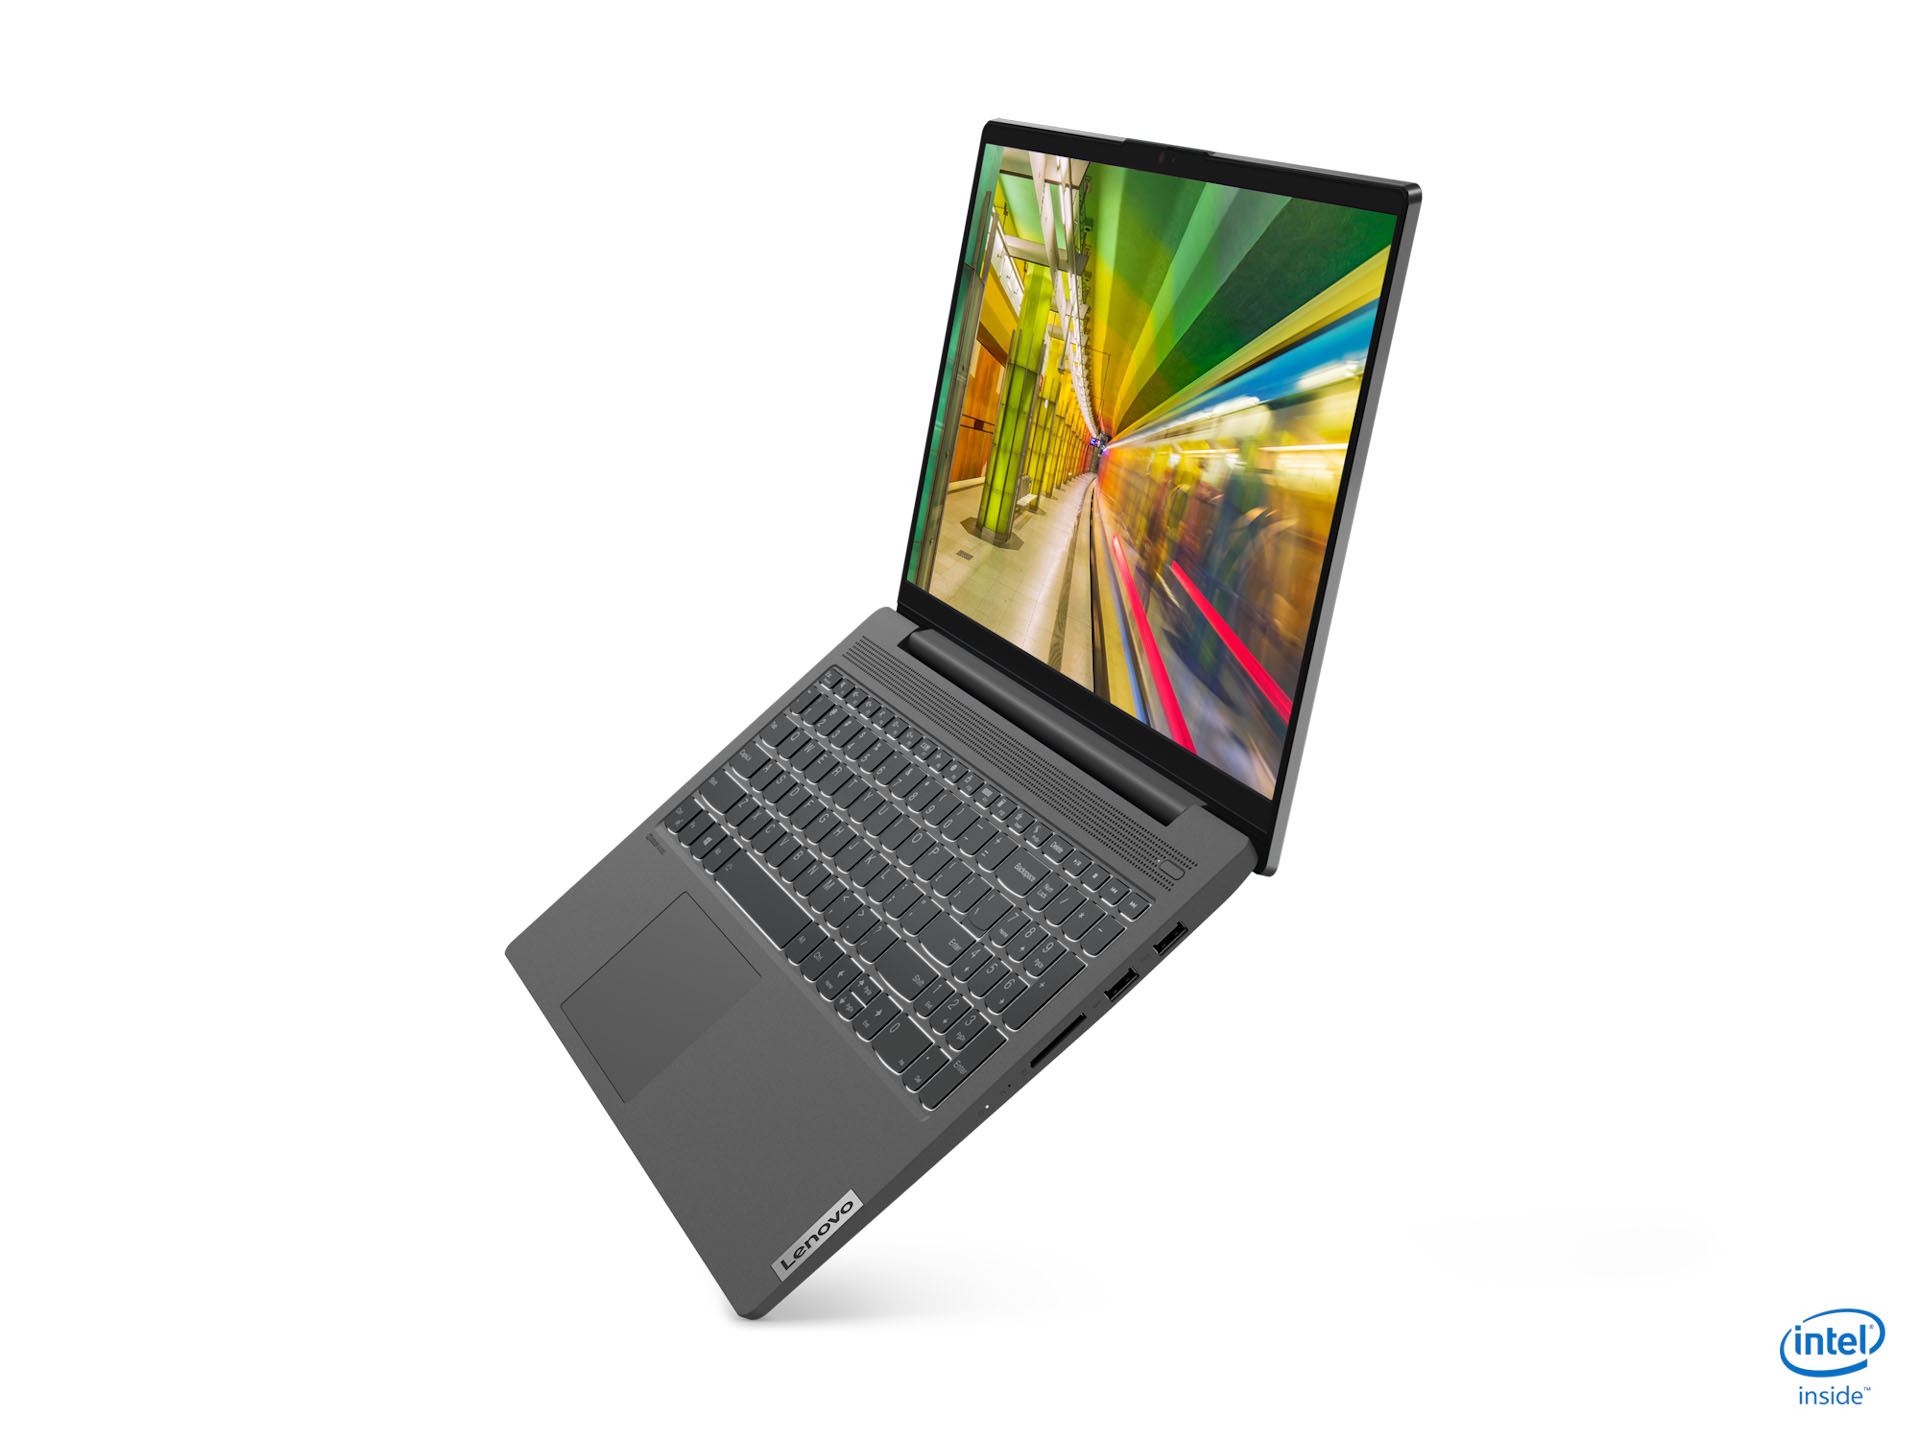 Lenovo ra mắt bộ đôi laptop IdeaPad mới: Mỏng, nhẹ, làm việc từ xa hiệu quả